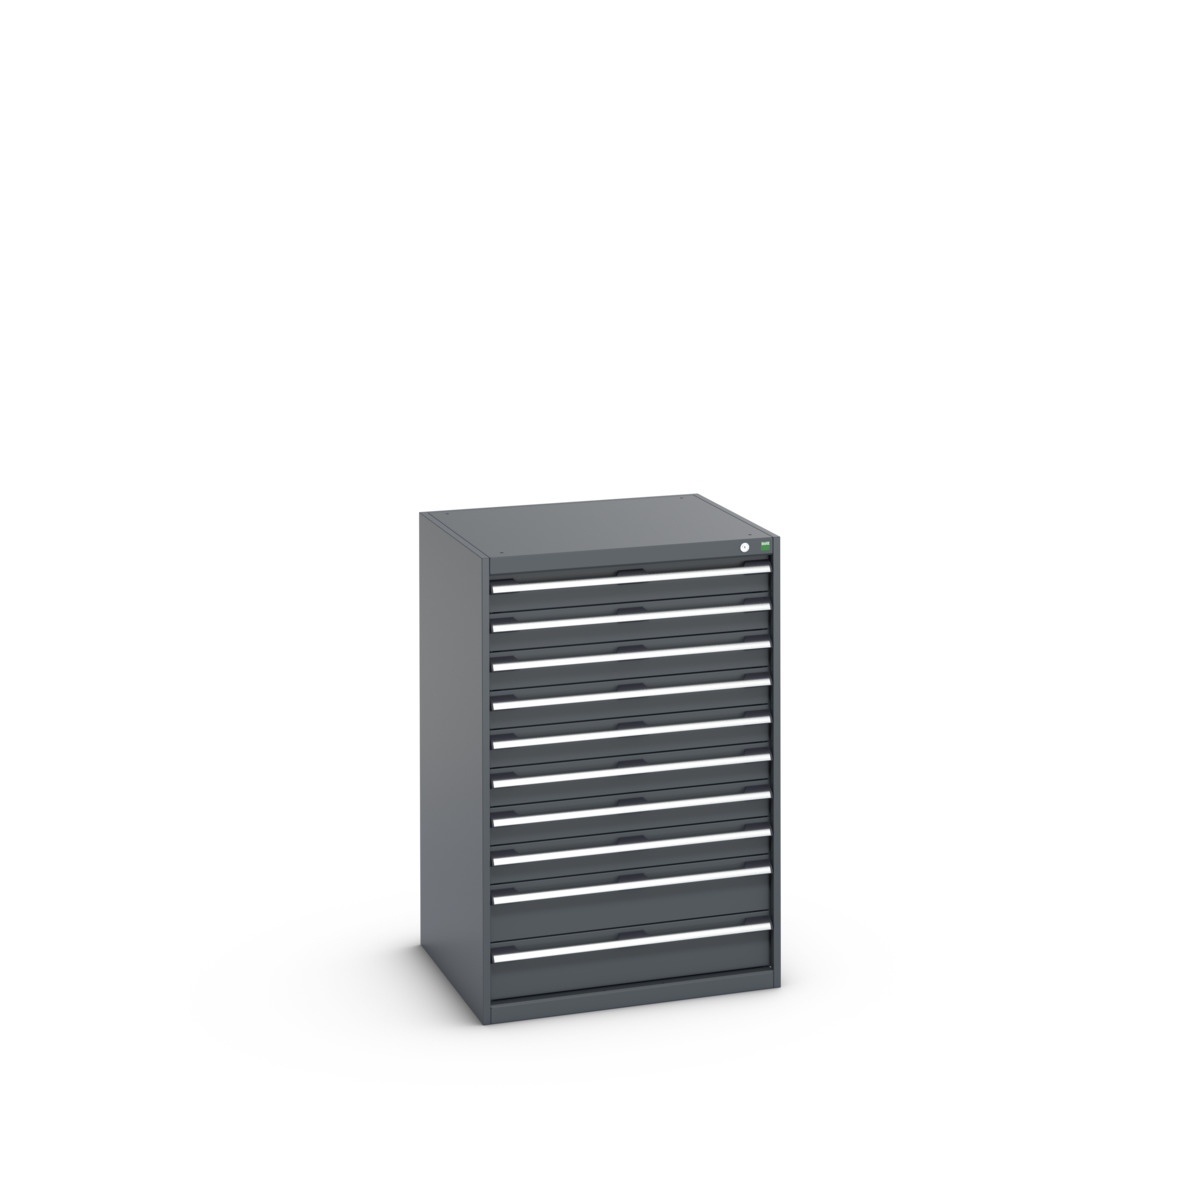 40028038.77V - cubio drawer cabinet